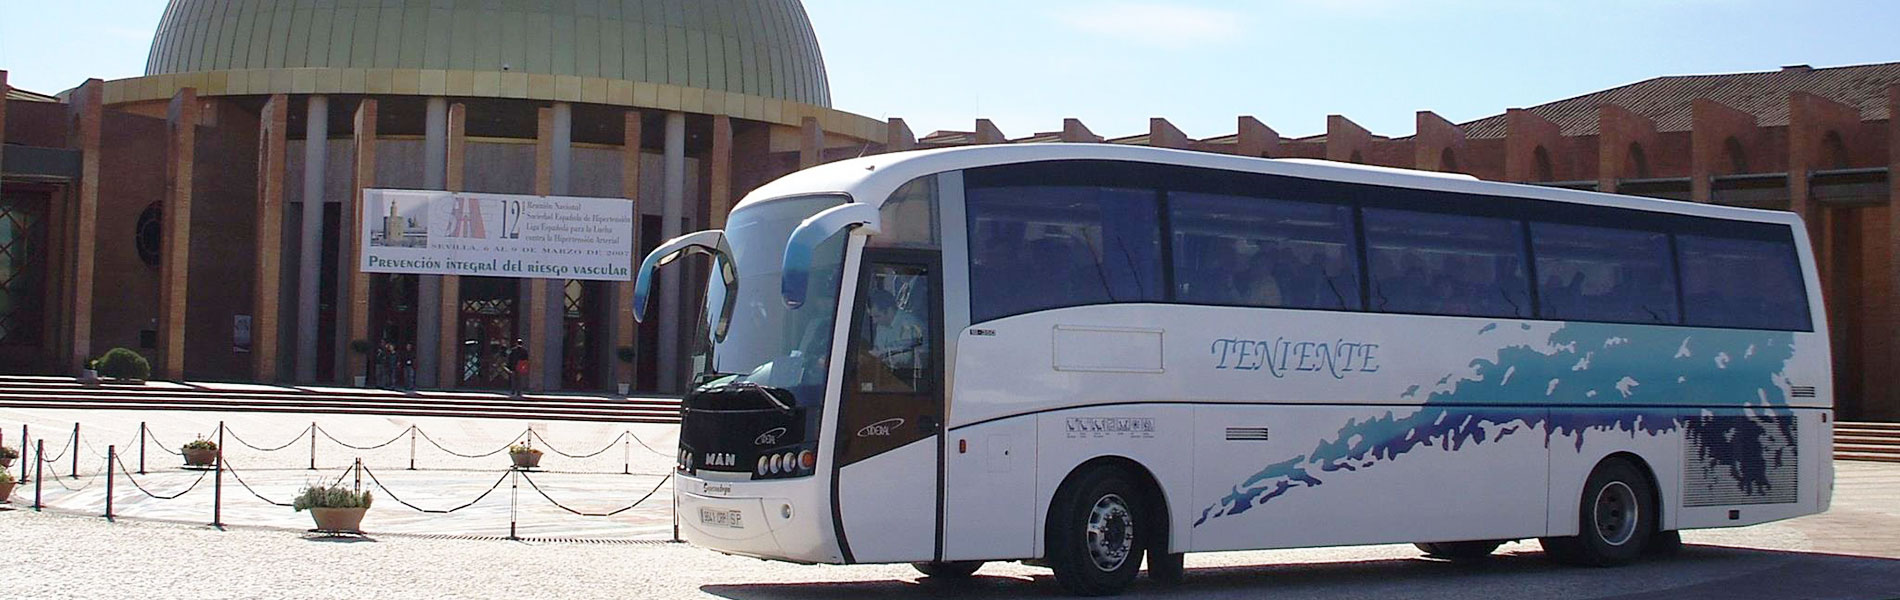 Autobus-FIBES-1900x600